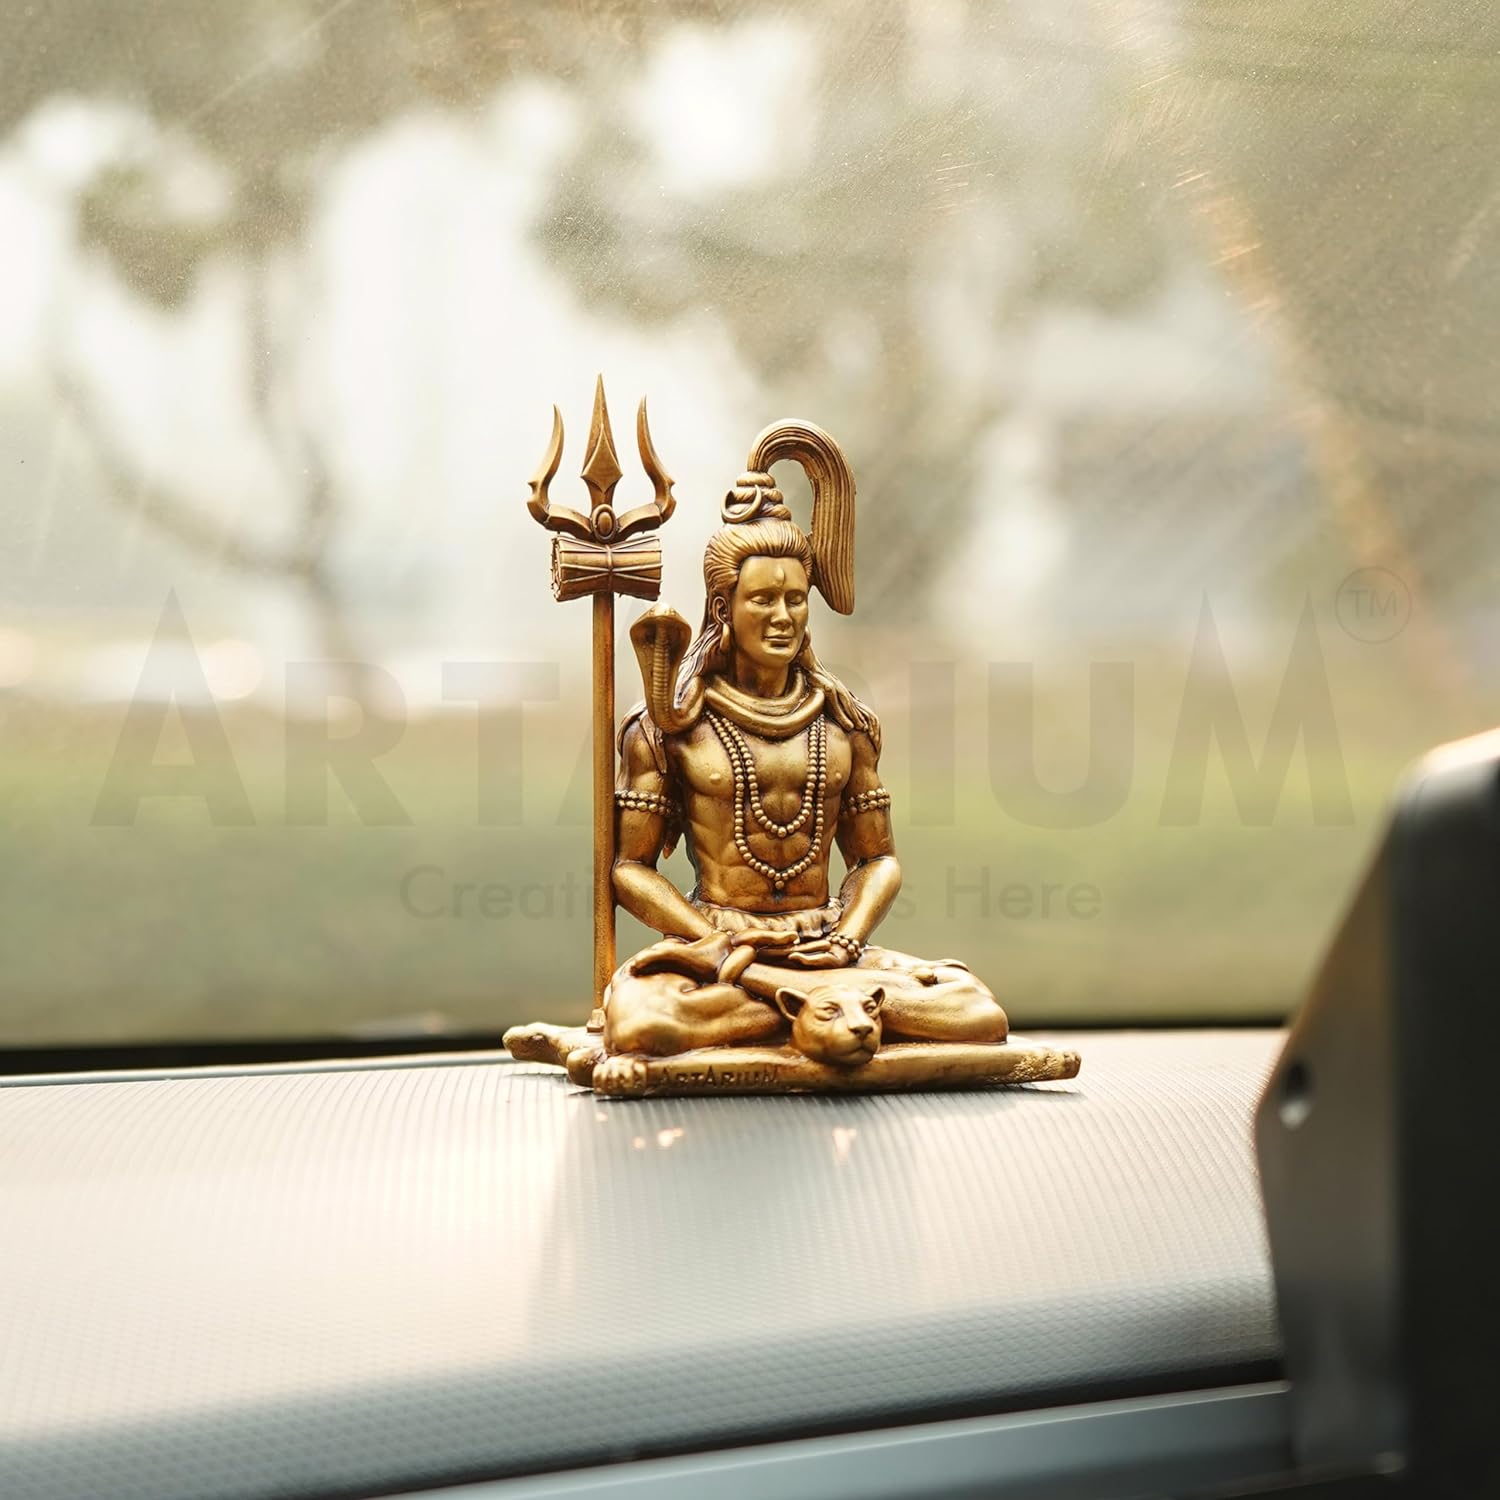 Meditating Lord Shiva for Car Dashboard | Shiva Idol for Home Décor | Mahadev Shiv ji Idol for Car Dashboard Item (1 Piece)…